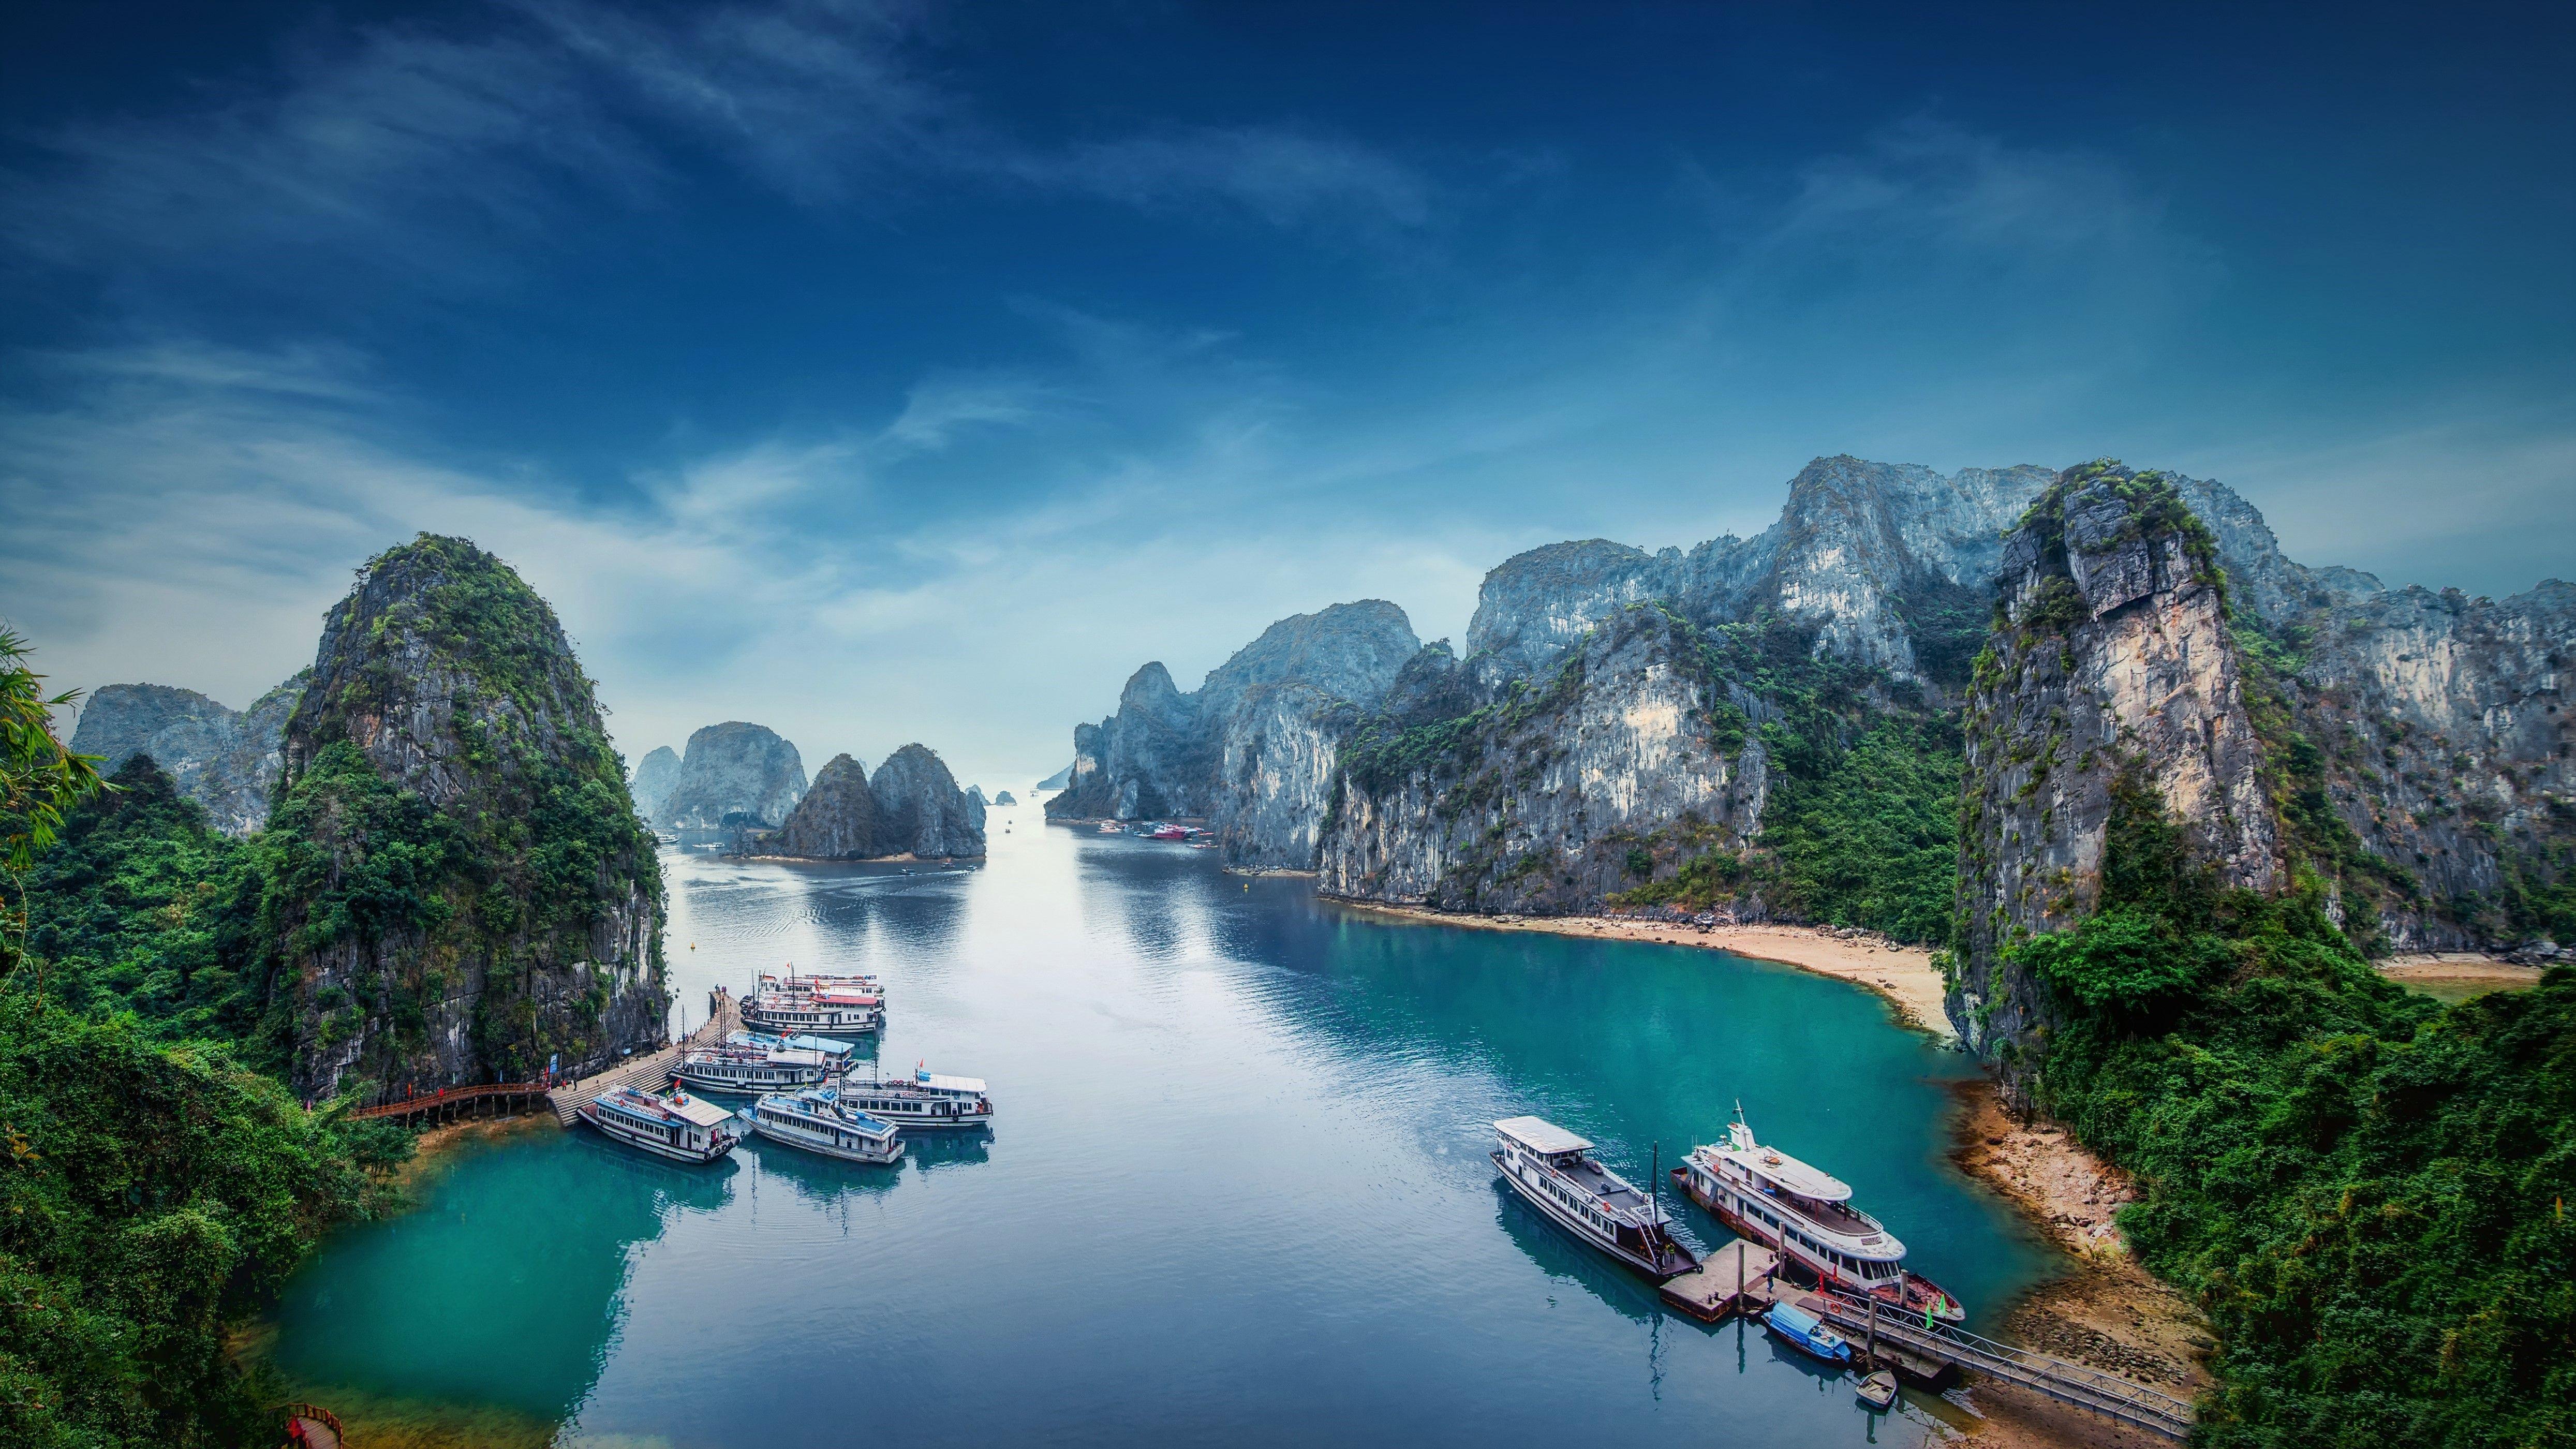 Hình ảnh Việt Nam 4K chính là bức tranh tuyệt đẹp, cảm nhận hết được sự tuyệt vời và tinh tế mà đất nước Việt Nam mang lại. Tựa như một dịch vụ tour du lịch đắt khách, những góc quay đặc biệt, những cảnh quay đẹp ngỡ ngàng, chắc chắn sẽ làm hài lòng mọi đối tượng khó tính.